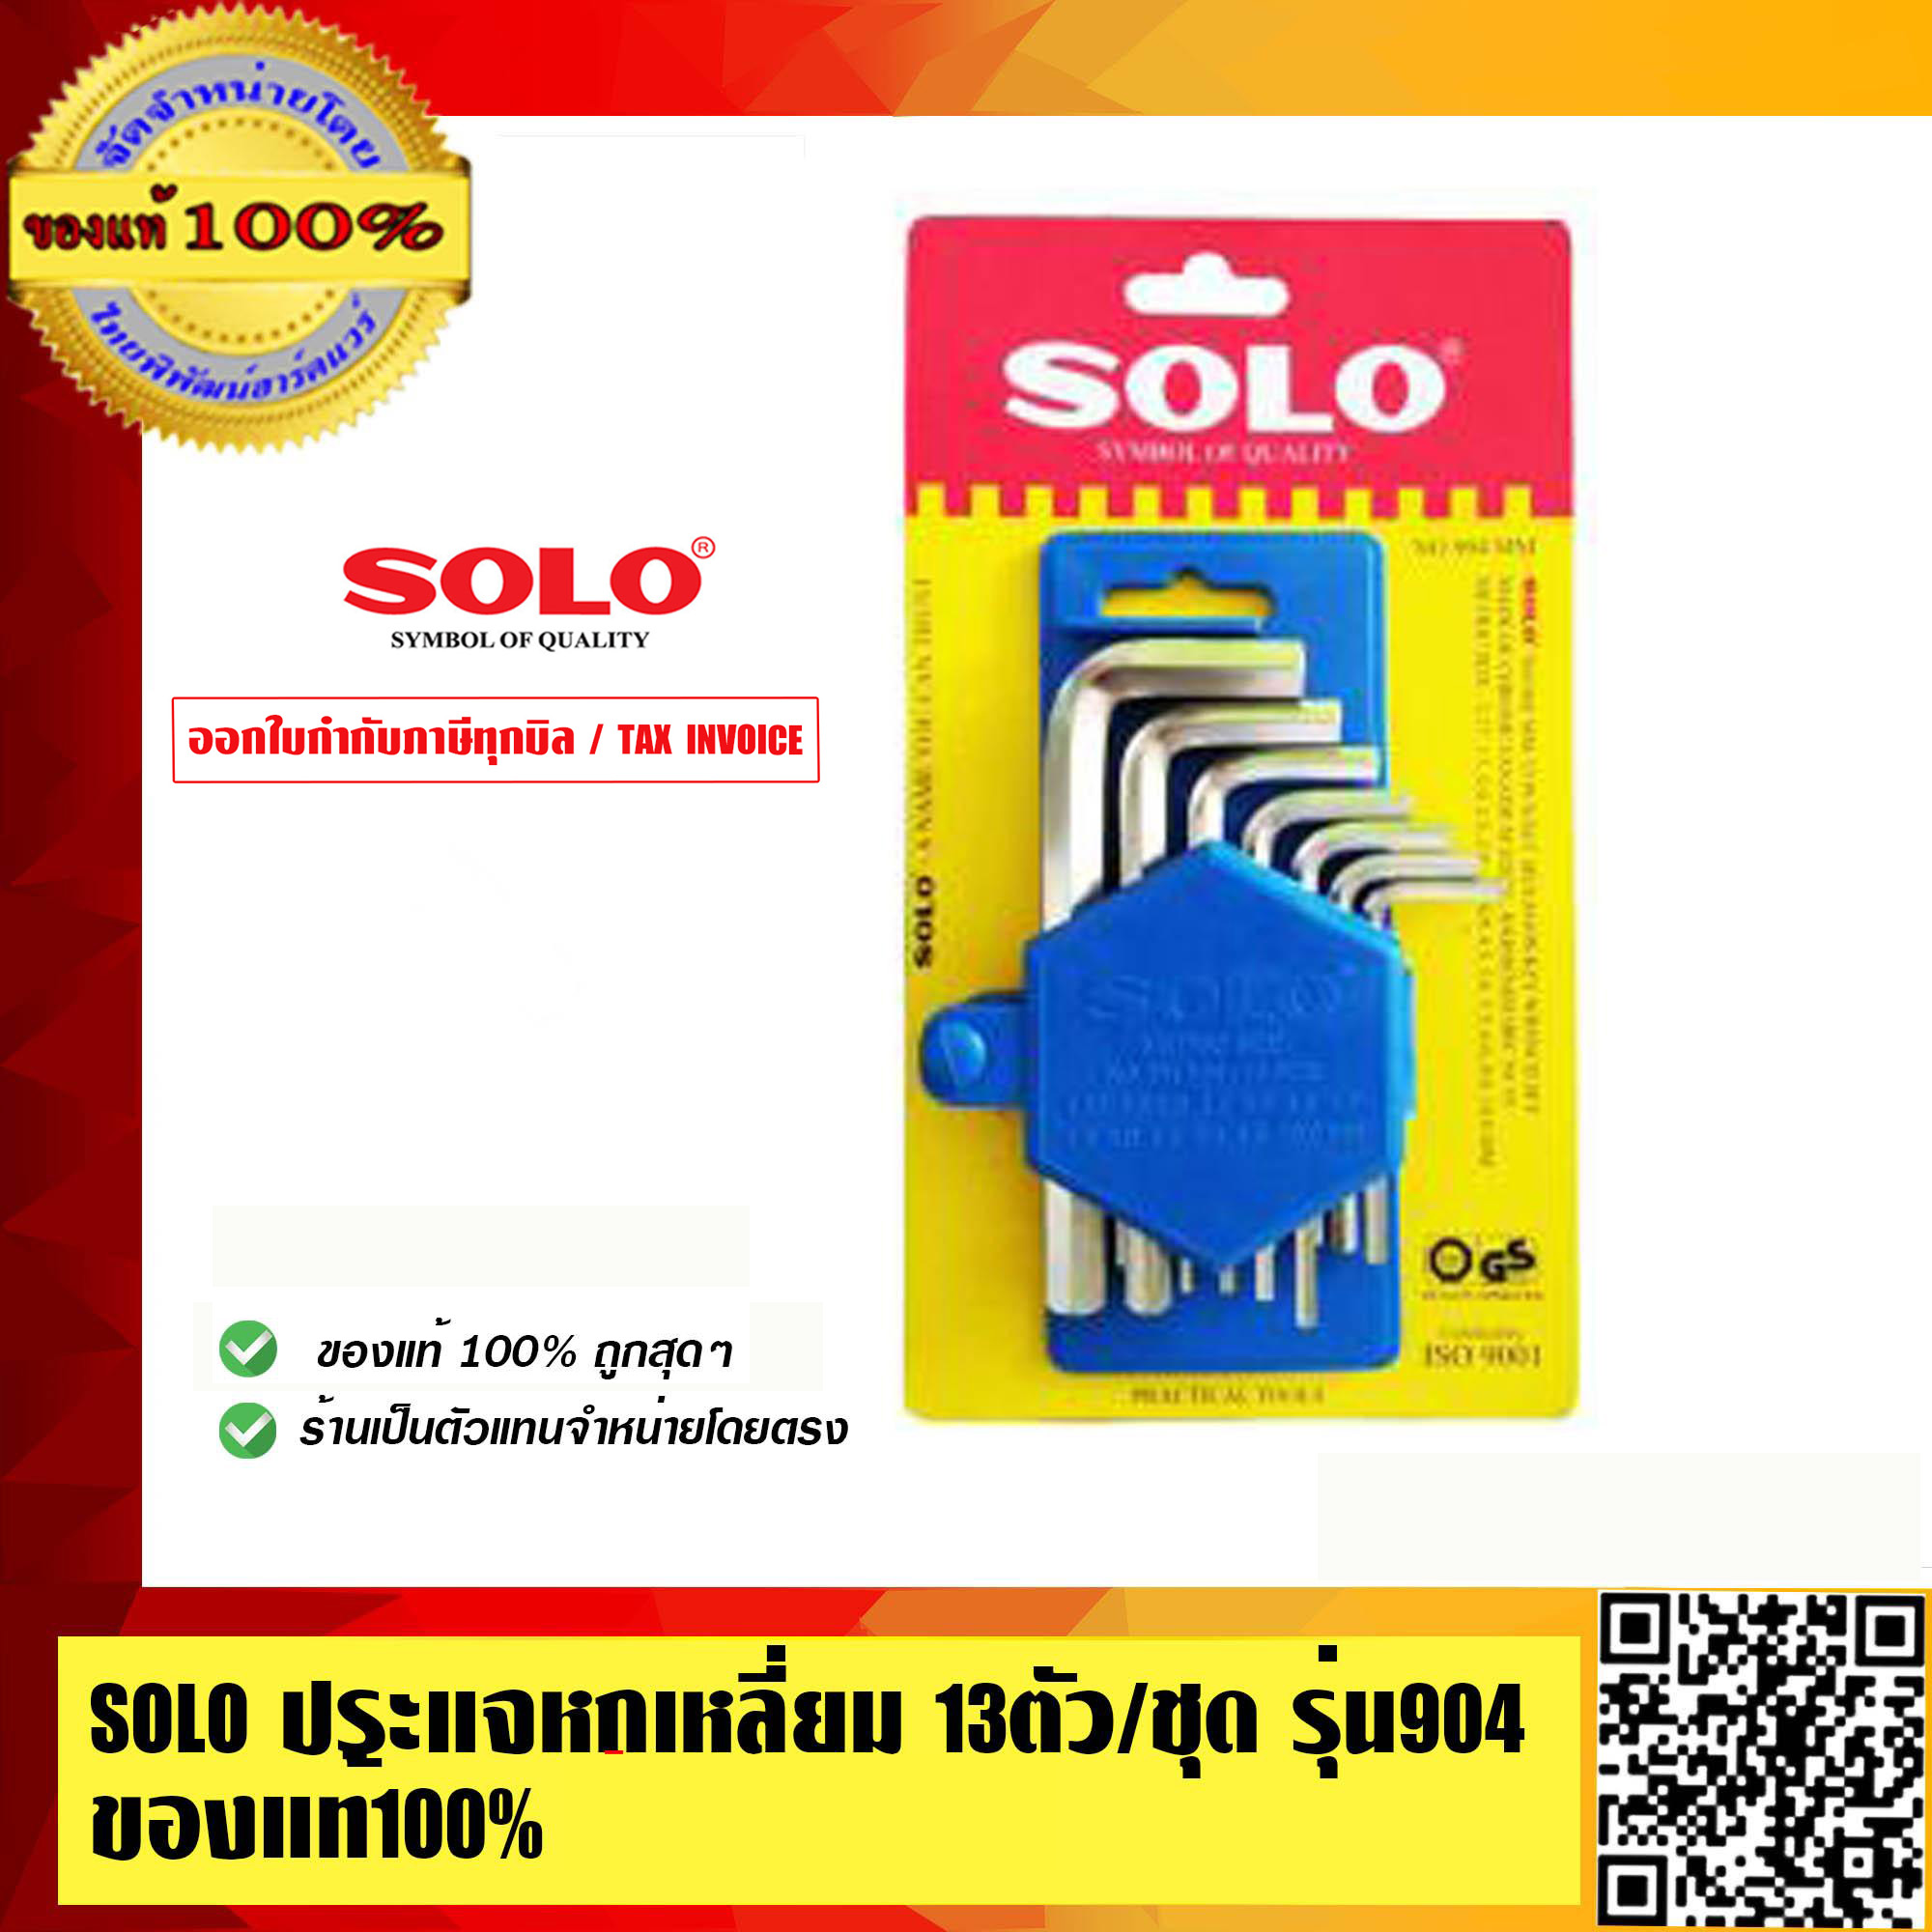 SOLO ประแจหกเหลี่ยม 13ตัว/ชุด รุ่น 904 ของแท้ 100% ร้านเป็นตัวแทนจำหน่ายโดยตรง